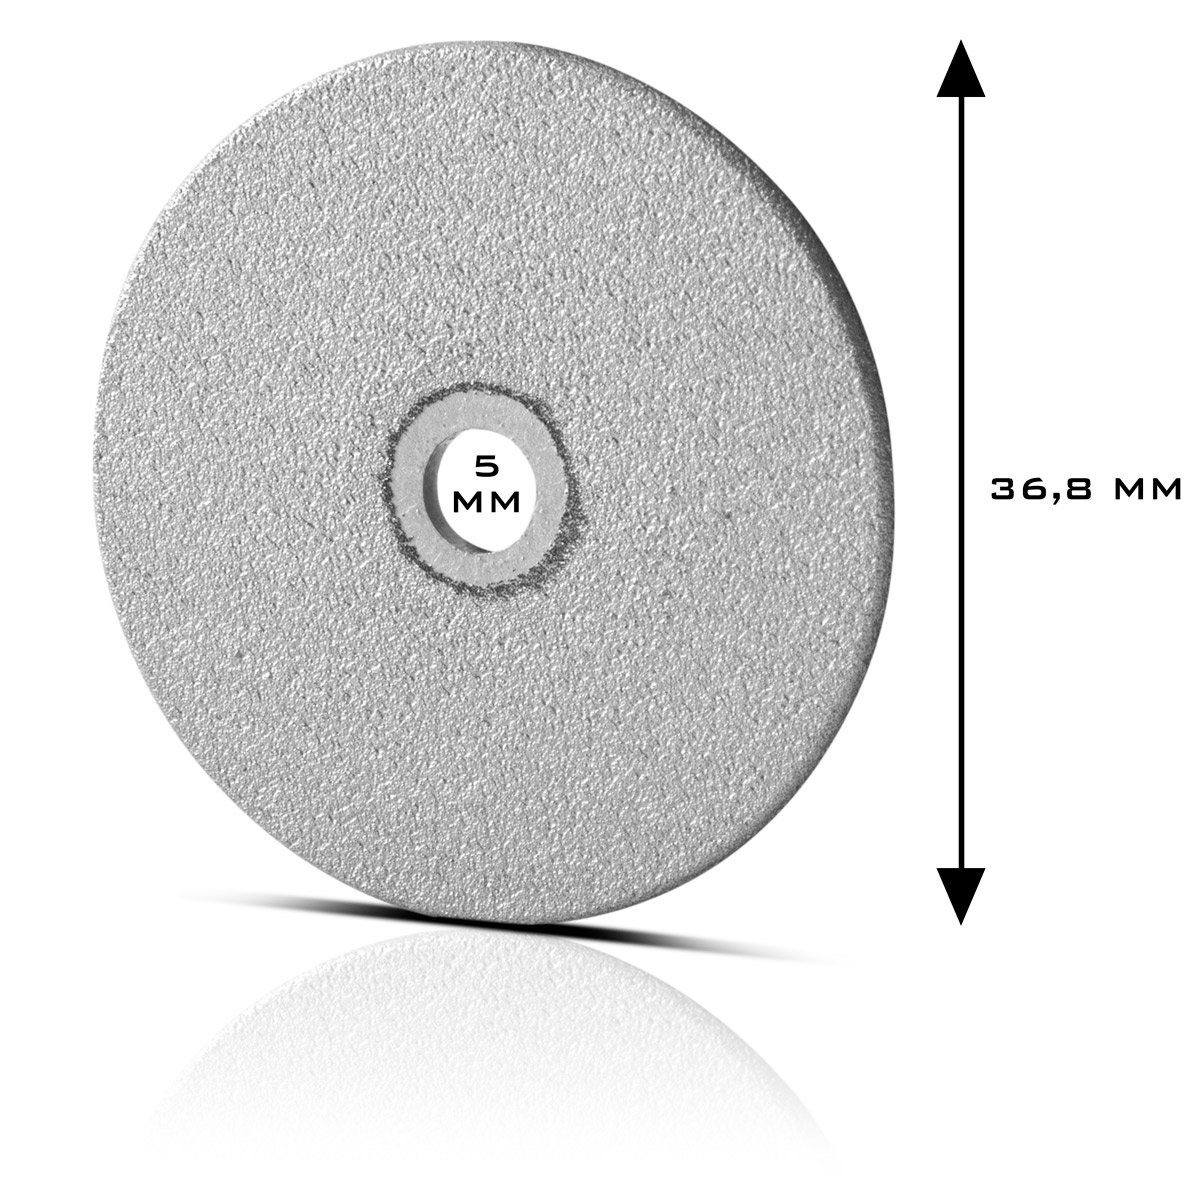 mm ST ATG-20 Schleifscheibe Durchmesser ATG-20 mm für Werkzeugaufnahme Diamant-Schleifscheibe Wolframschleifer zu Diamant-Schleifscheiben passend St), für 5 (1 36,8 Wolfram-Schleifgerät STAHLWERK ST, mit